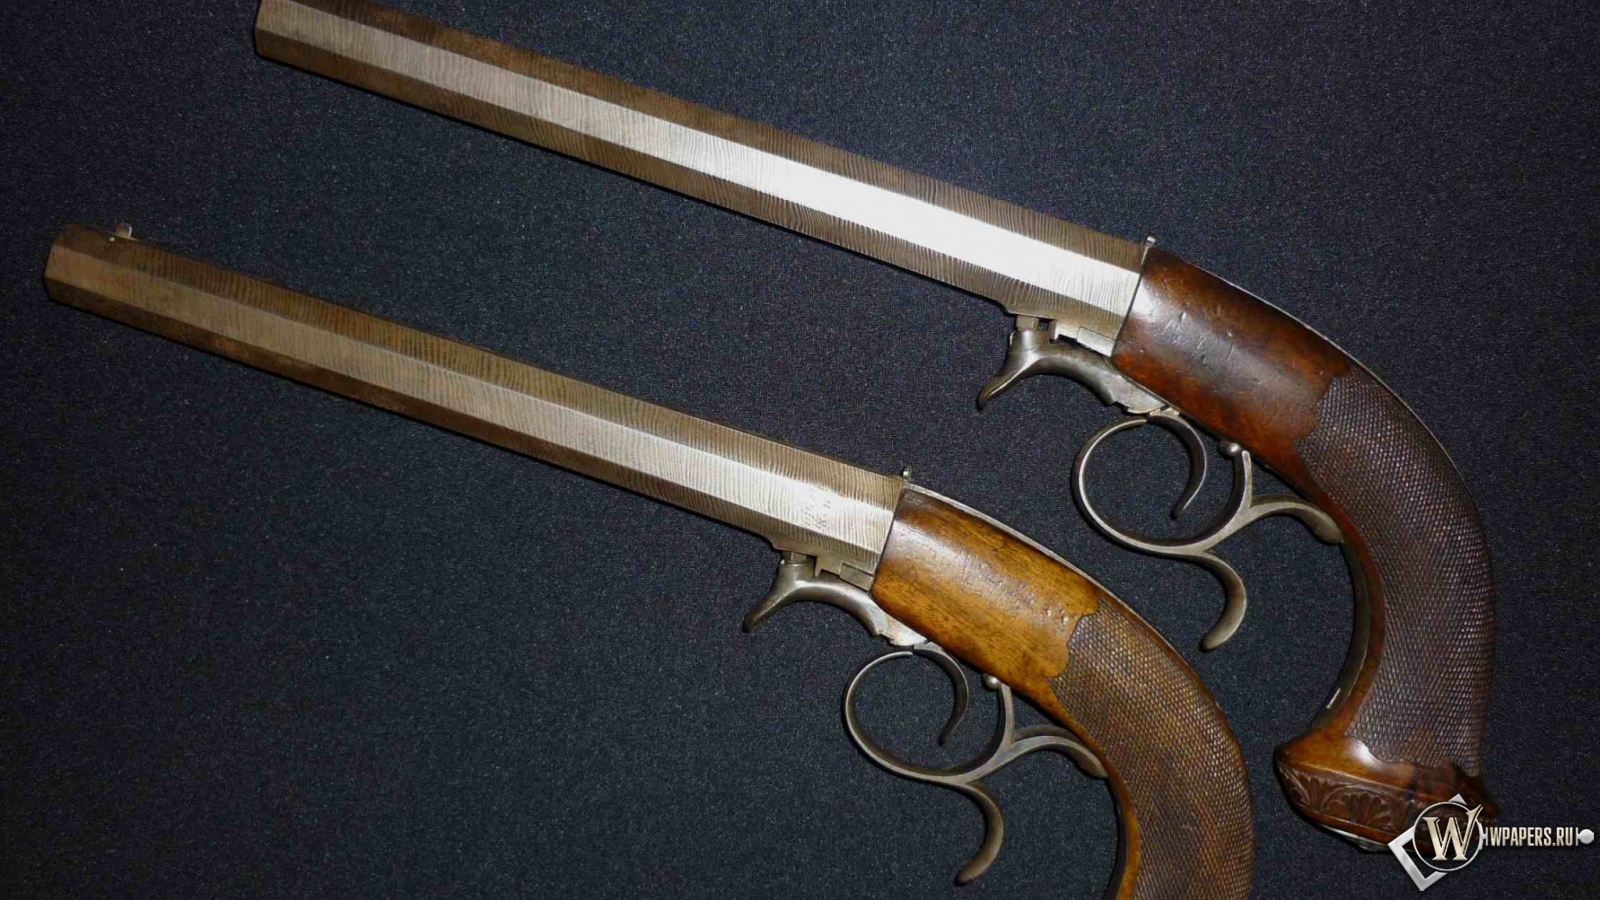 Дуэльные пистолеты 40-50 годы XIX века 1600x900